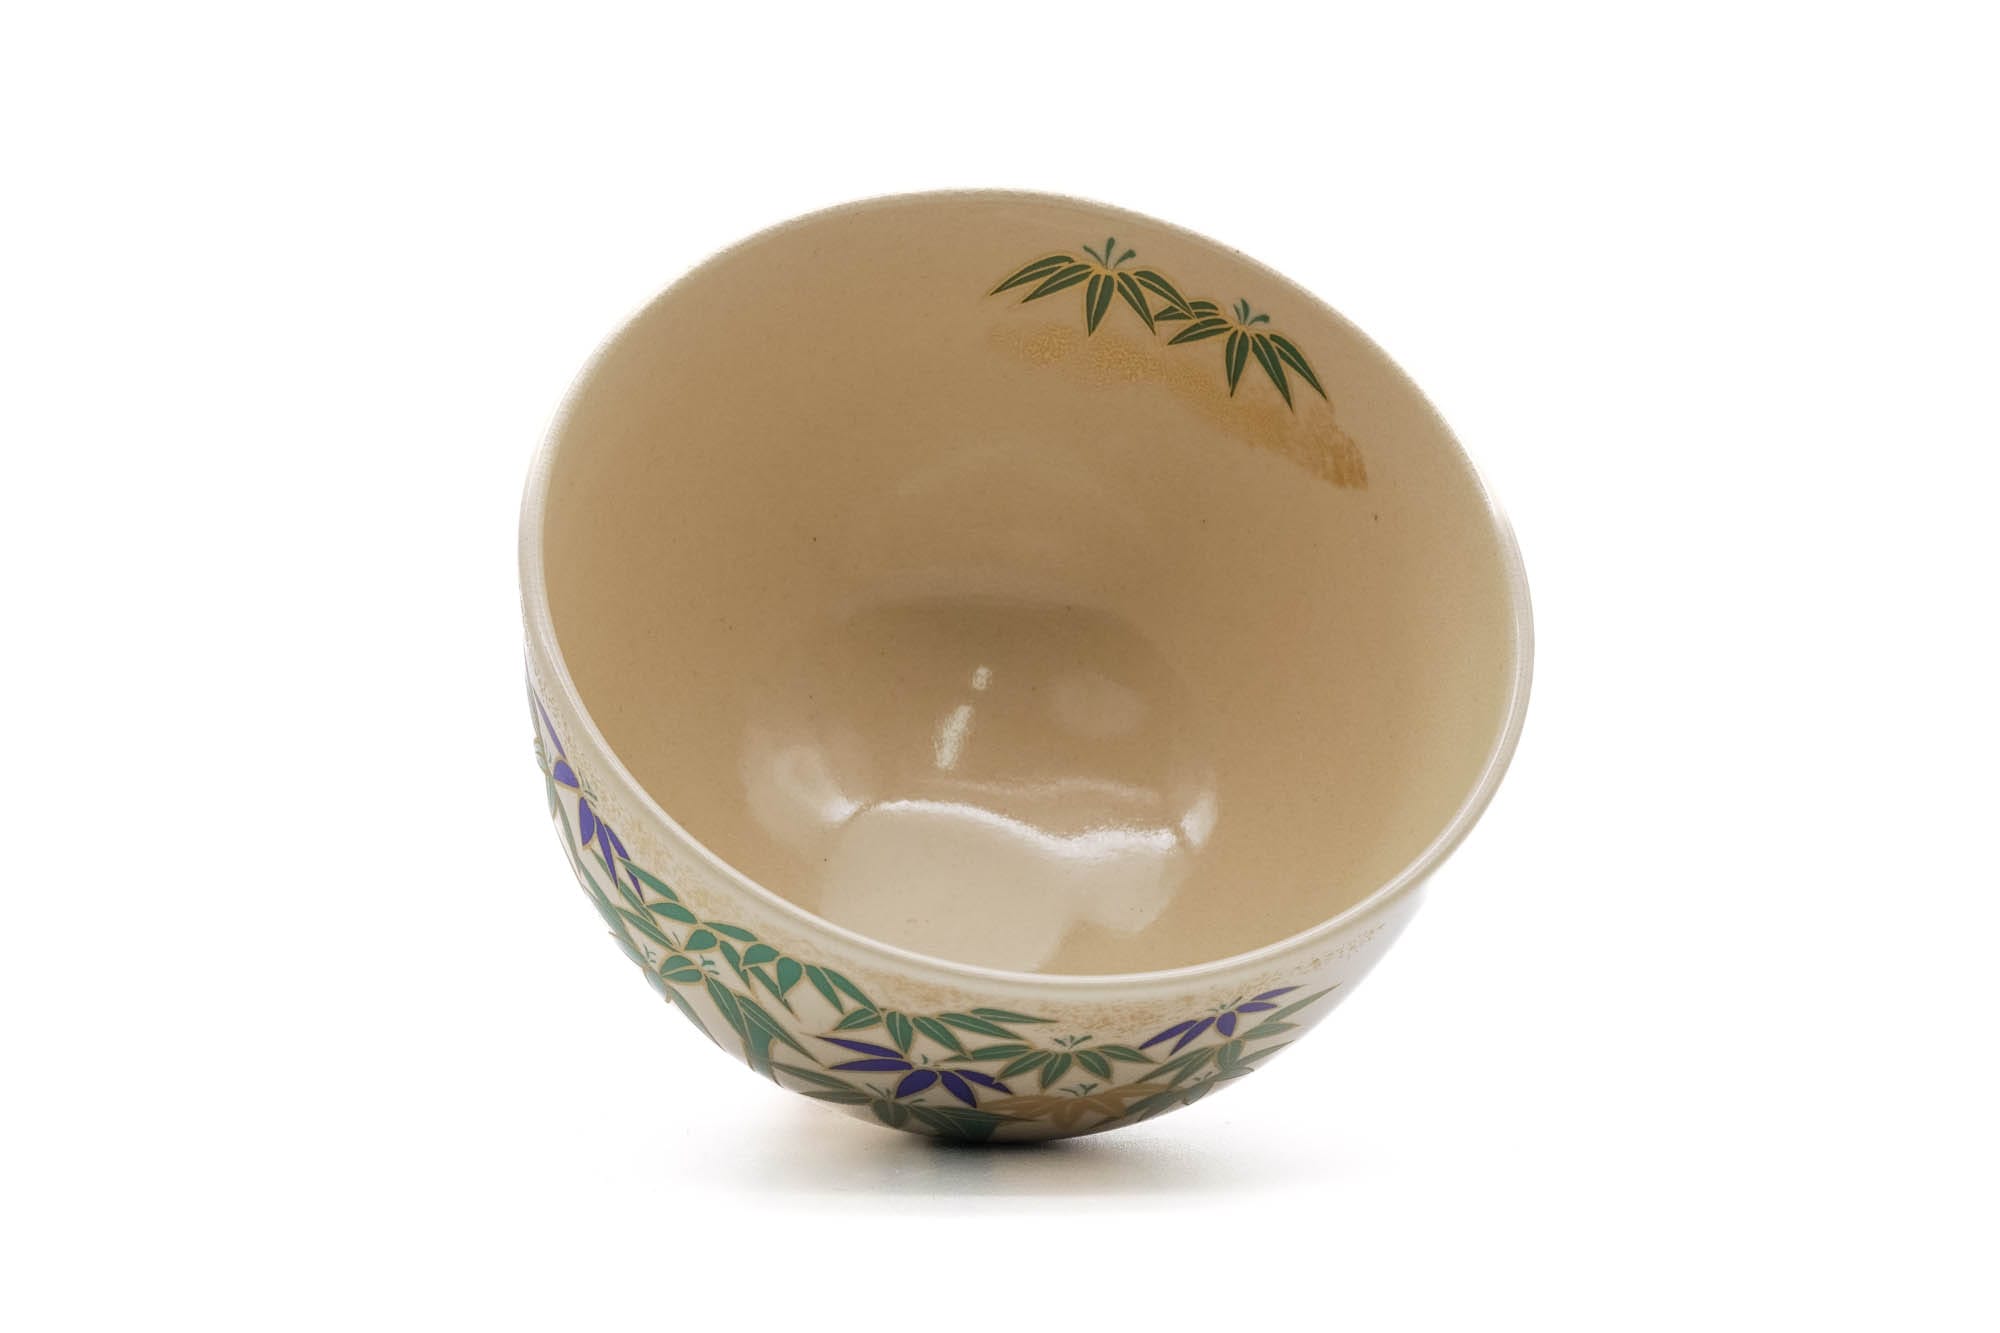 Japanese Matcha Bowl - 栄山 Eizan - Bamboo Grove Kyo-yaki Chawan - 300ml